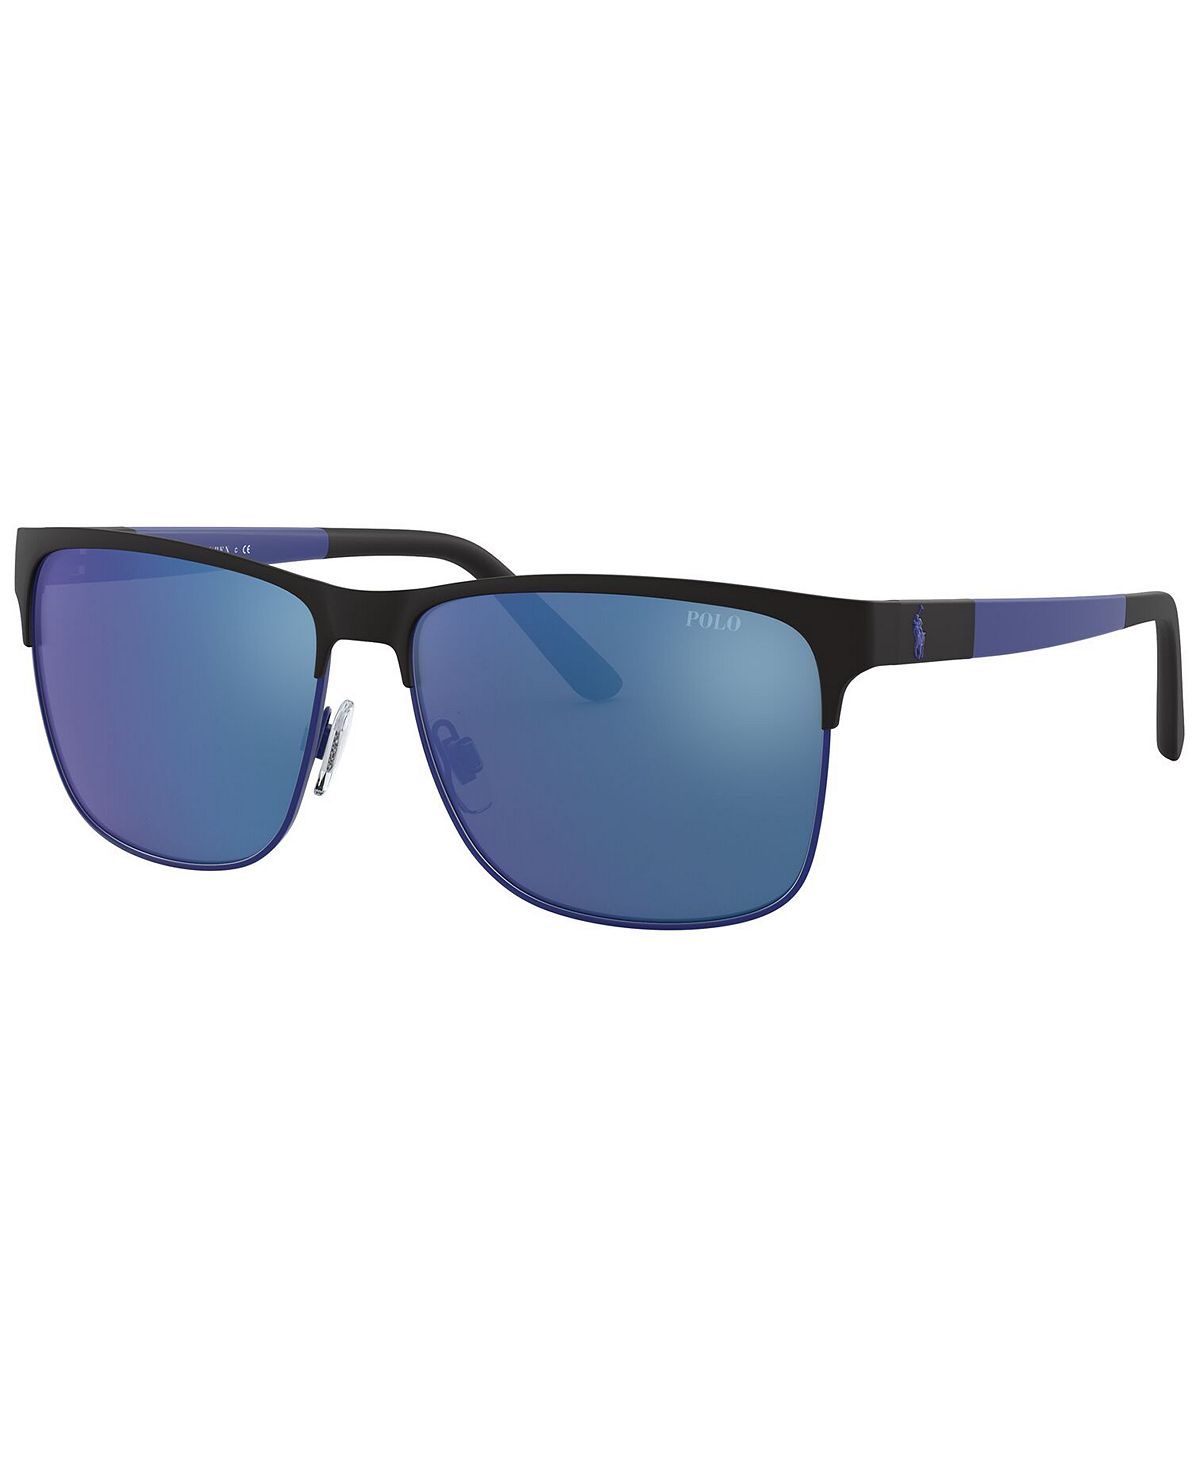 Солнцезащитные очки, ph3128 57 Polo Ralph Lauren, мульти